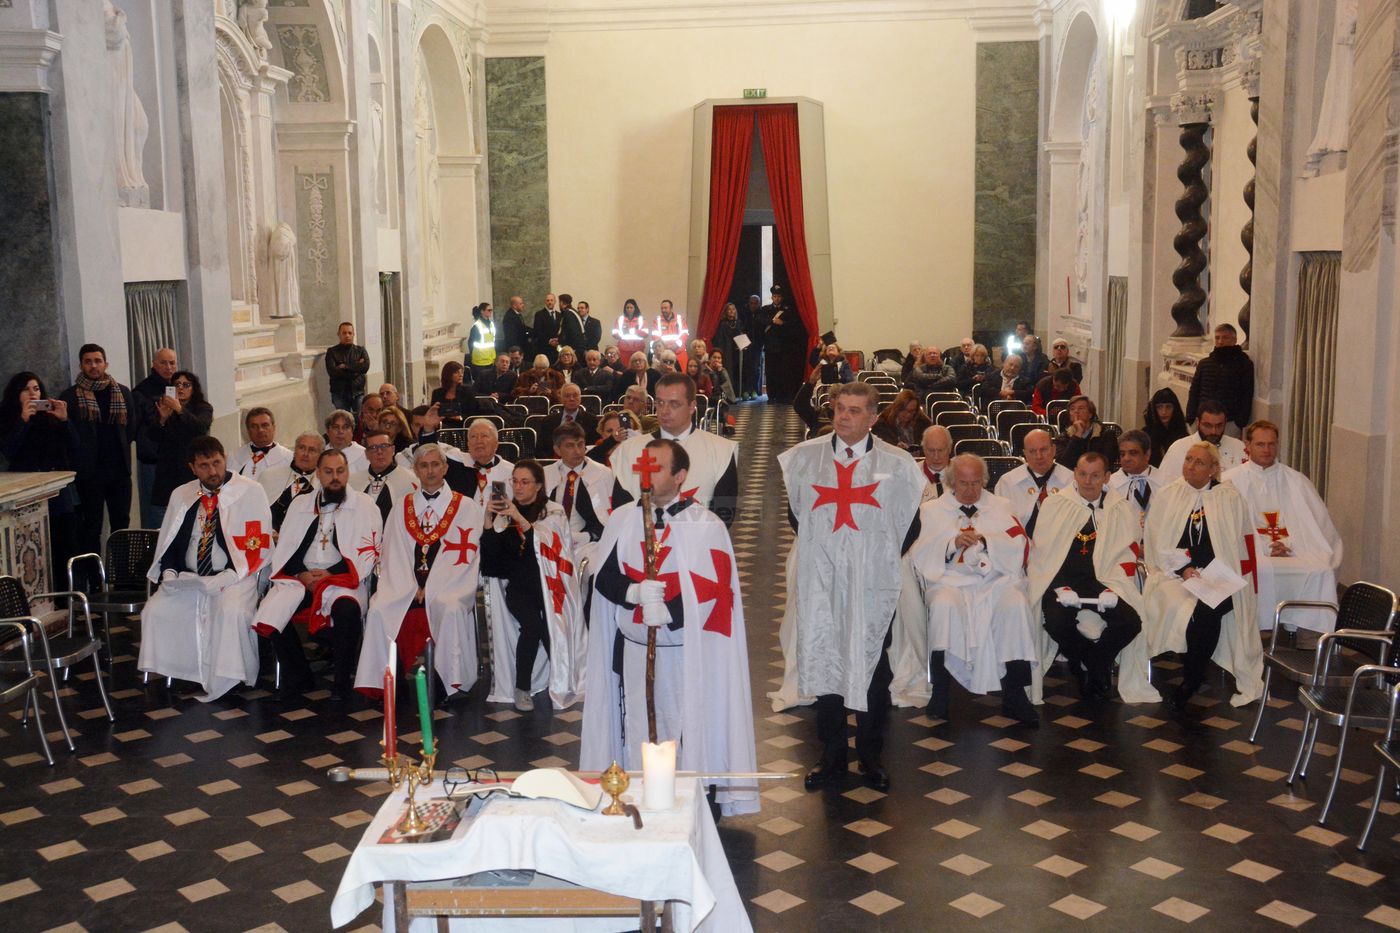 Cavalieri Templari ex chiesa San Francesco Ventimiglia 1 dicembre 2018_54